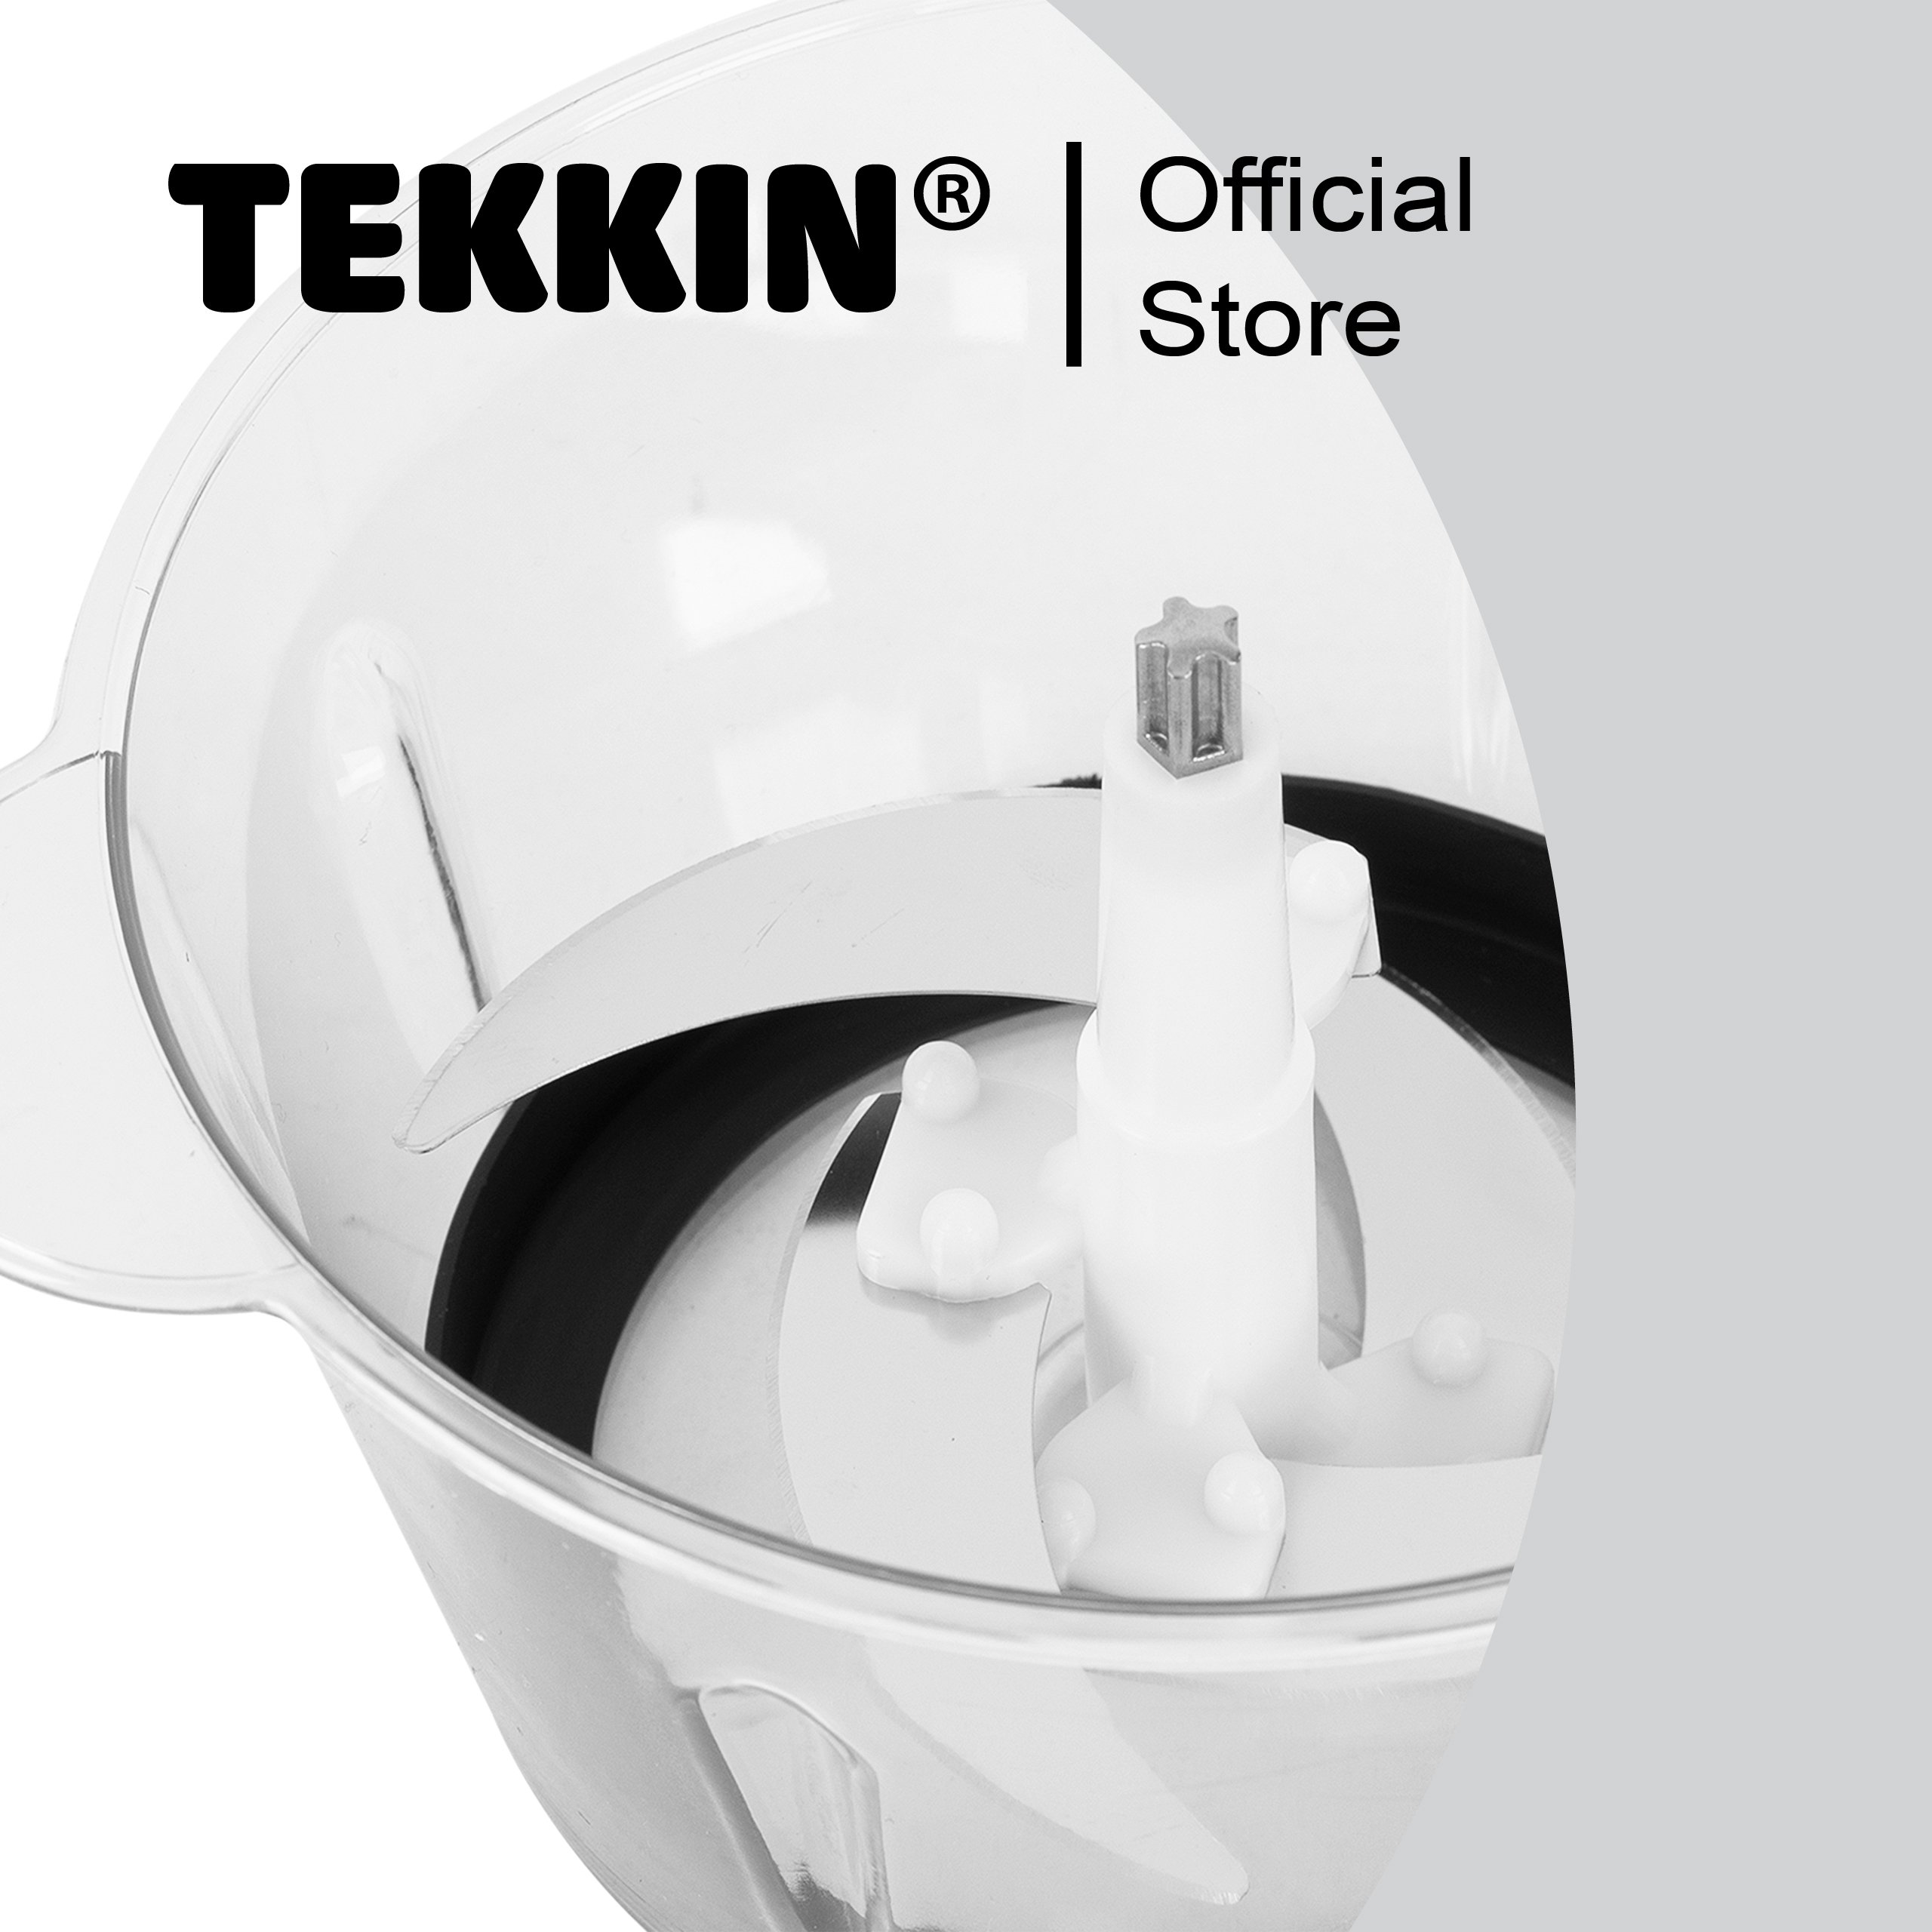 Máy xay thịt thực phẩm đa năng TEKKIN A6 công suất 300W  bảo hành 12 tháng - hàng chính hãng